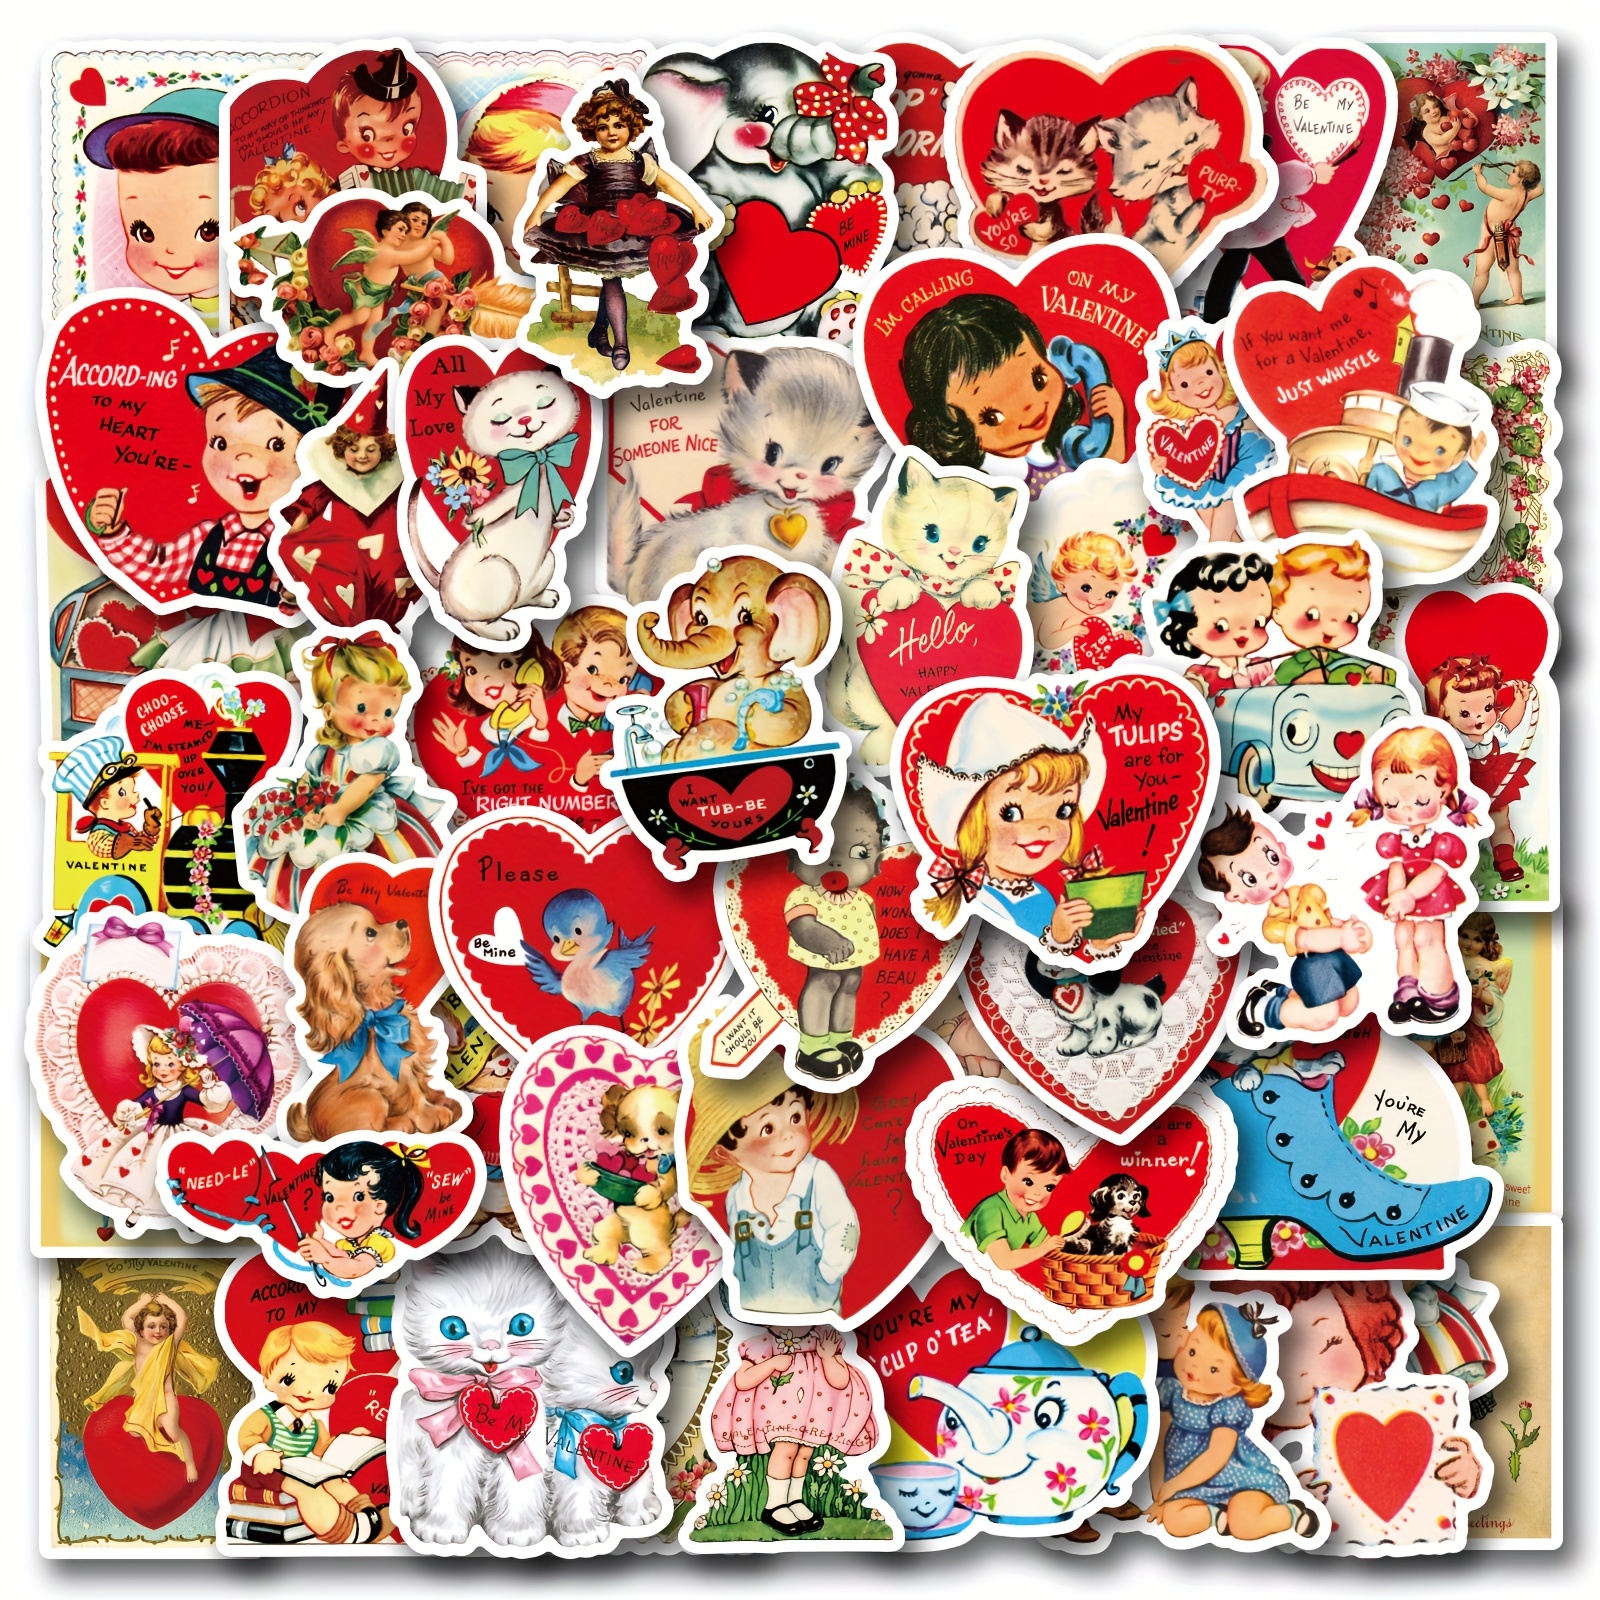 Vintage Valentine Stickers